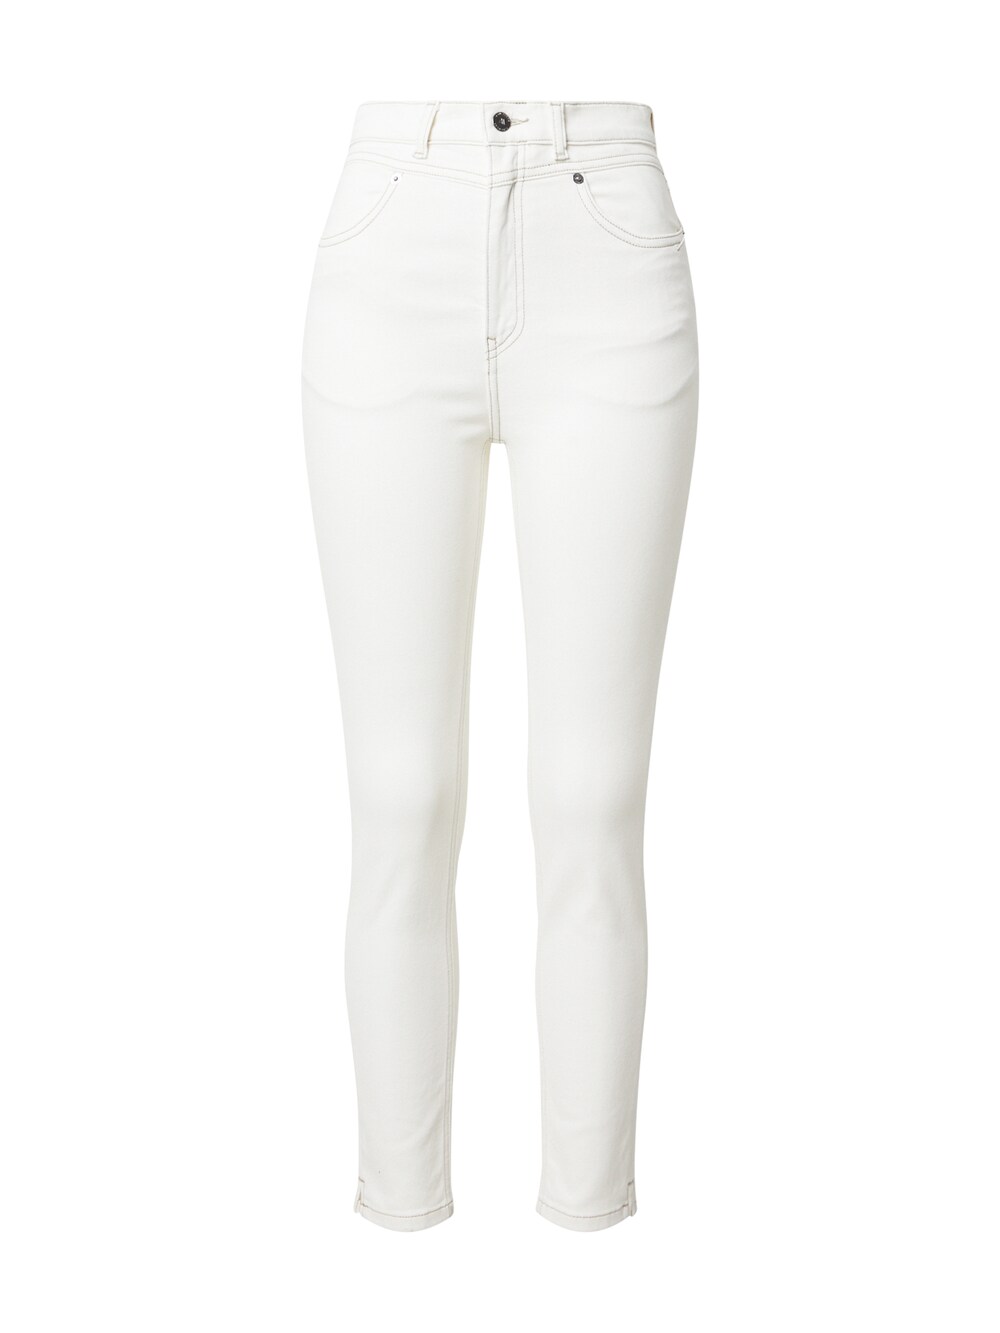 Узкие брюки MUD Jeans Sandy, от белого